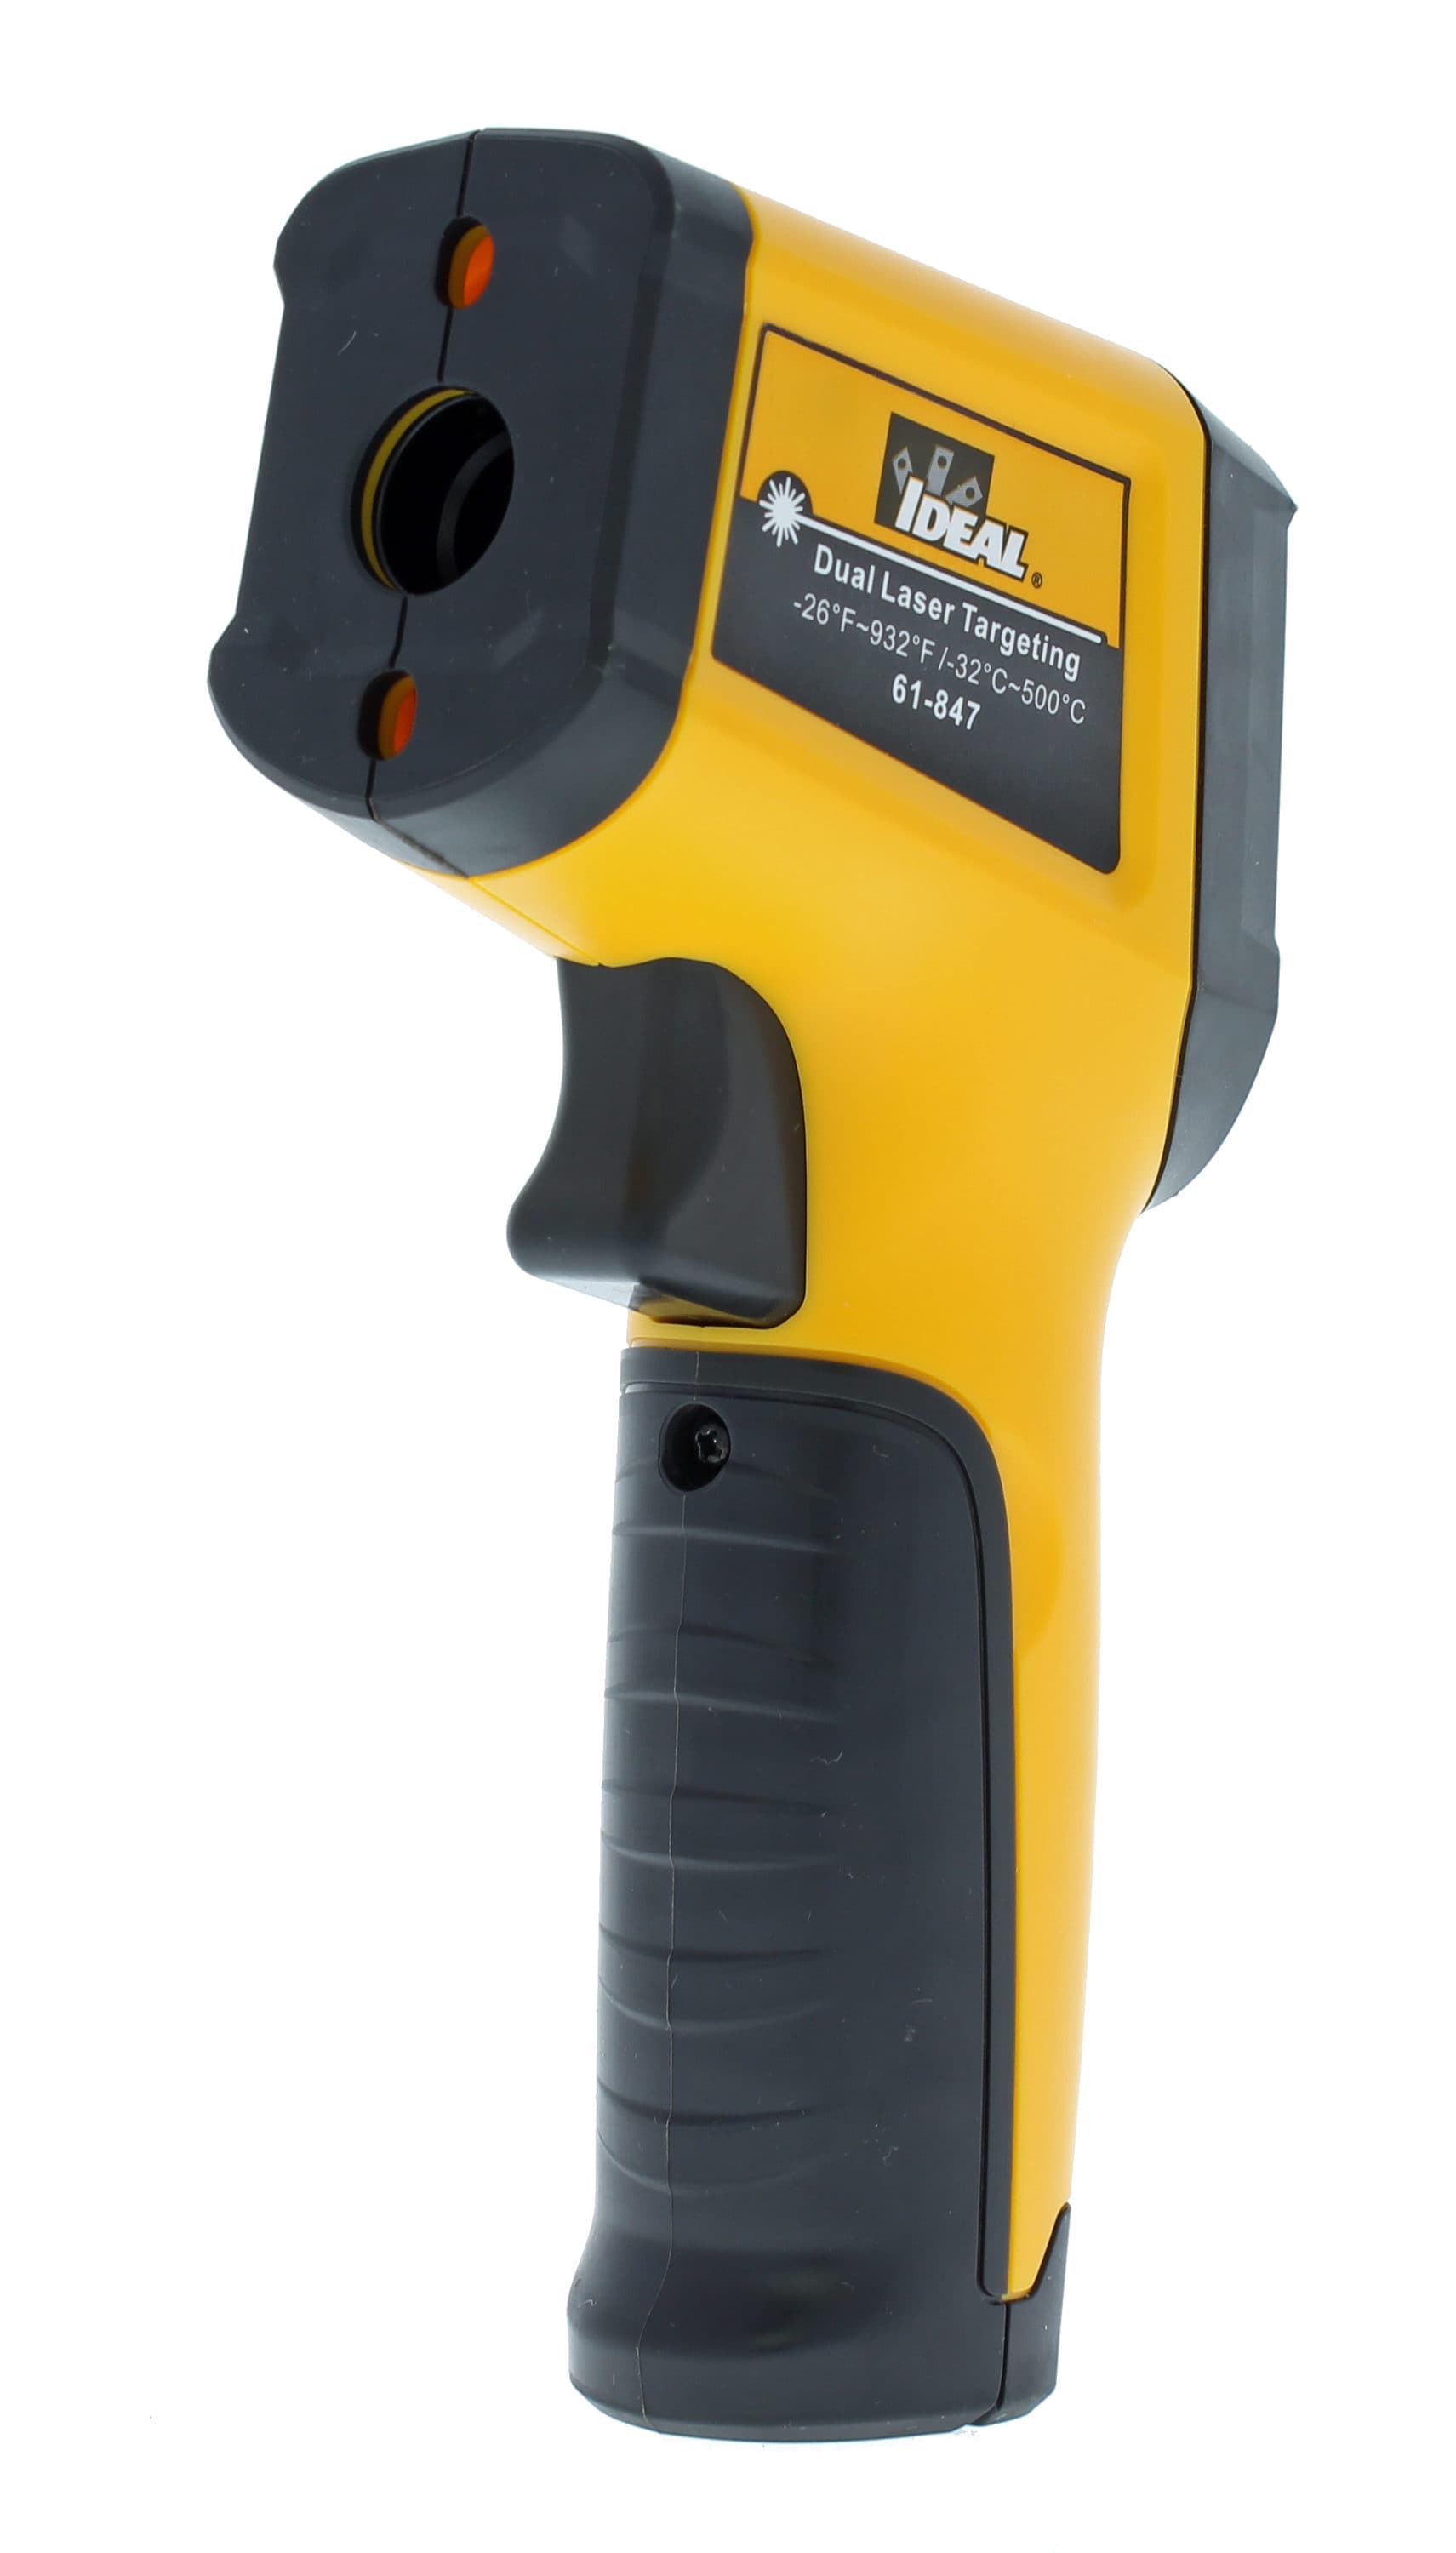  Digital Infrared Thermometer Gun, Kethvoz Dual Laser